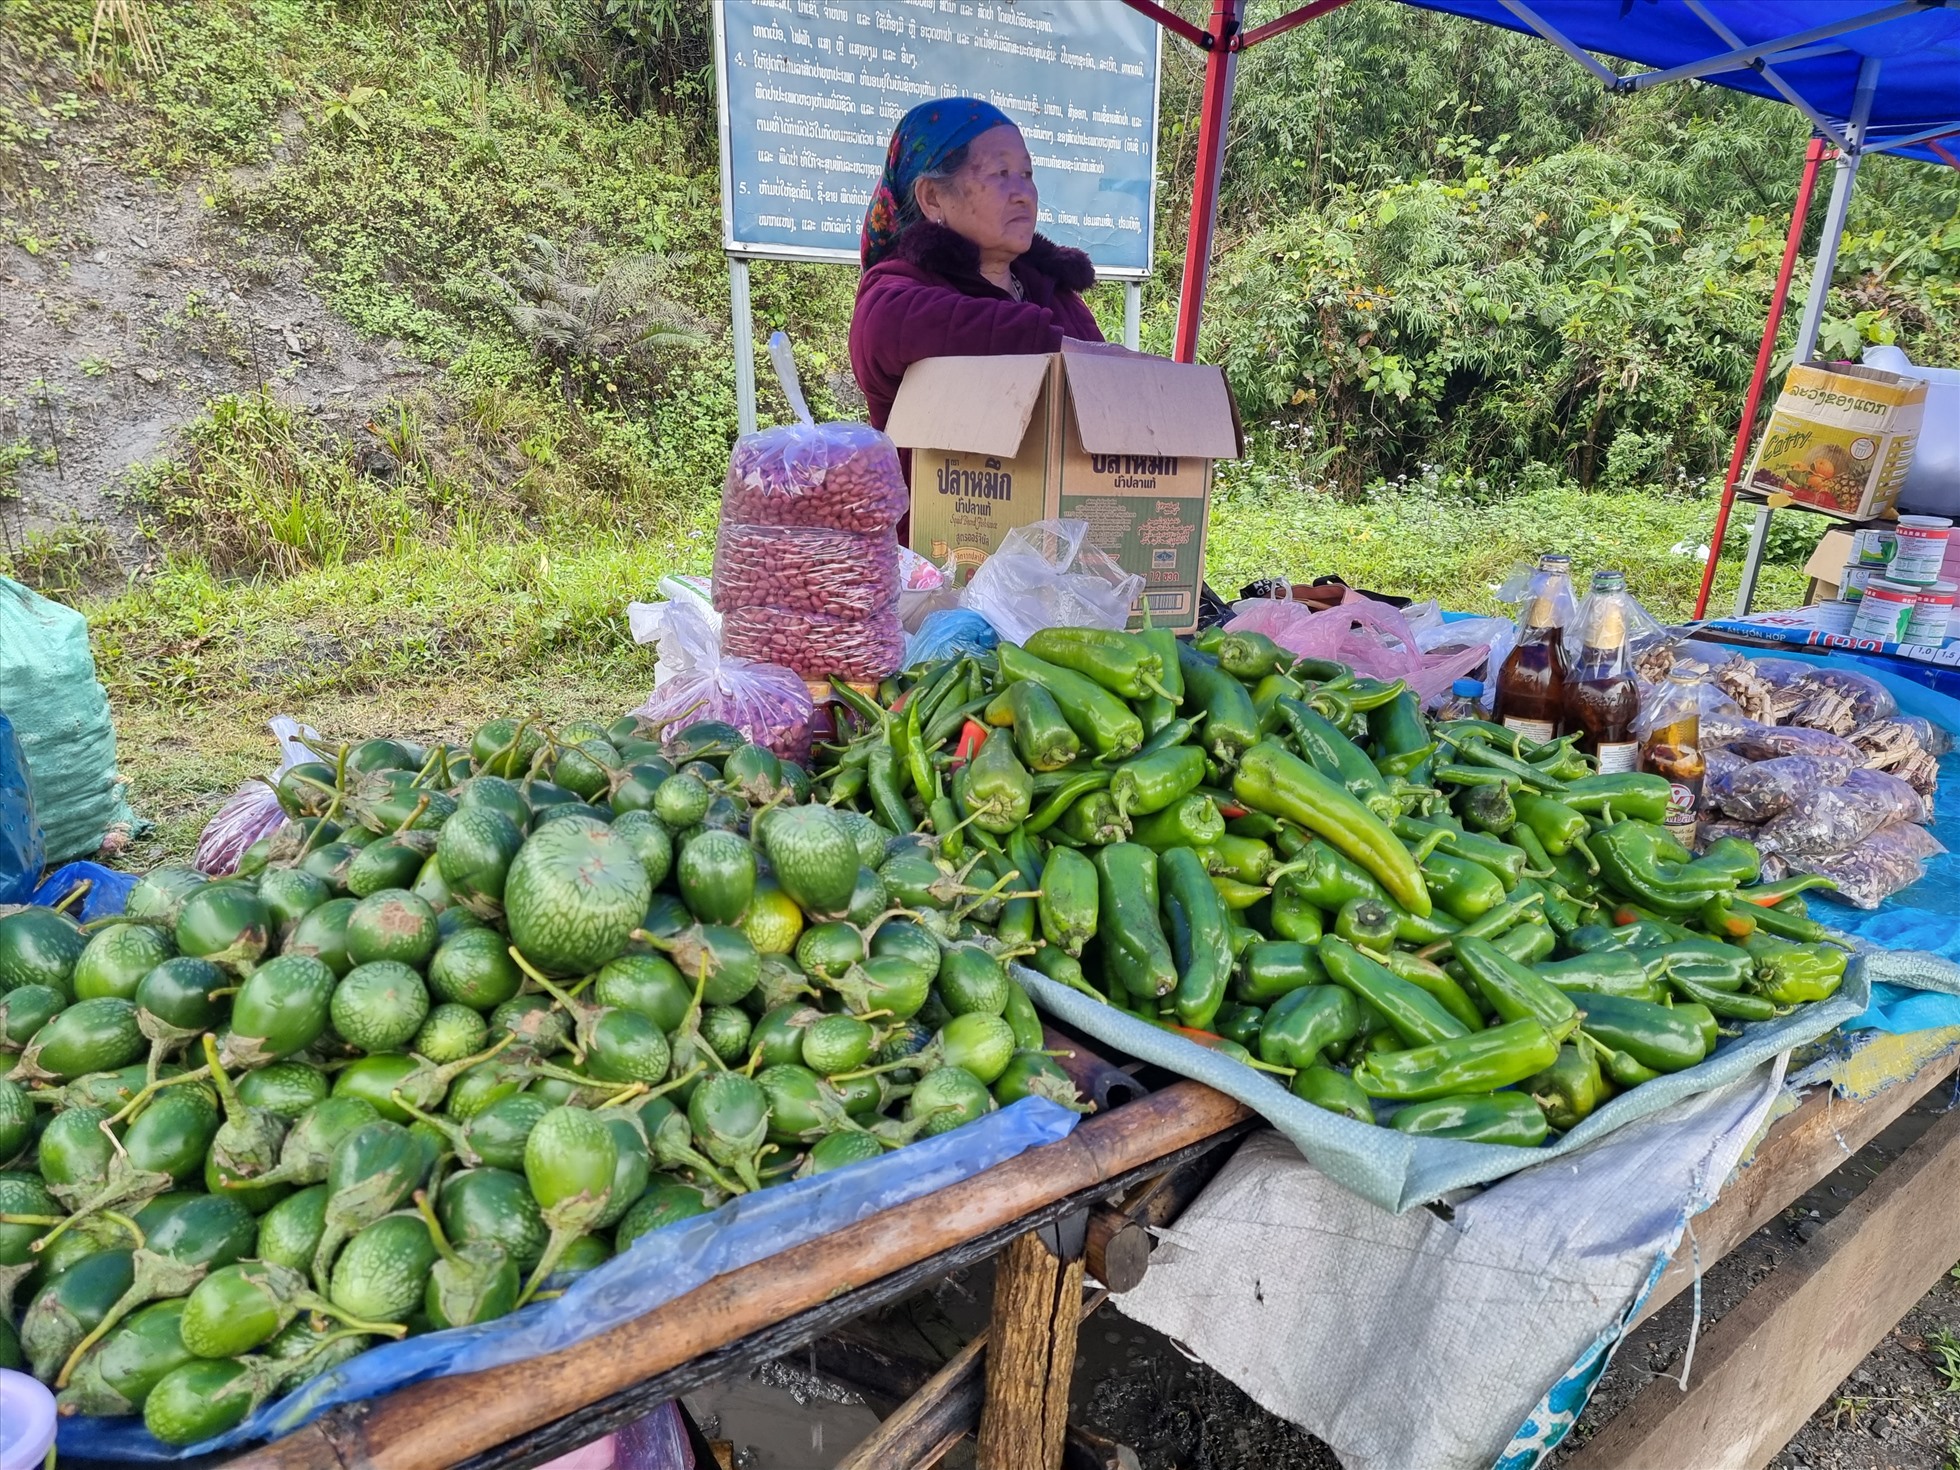 Đặc sản cà Lào và ớt Lào được bày bán tại chợ phiên biên giới Việt Lào. Tại đây người dân chủ yếu giao dịch bằng tiếng Mông, nhưng có nhiều người hiểu tiếng Việt. Tiền Lào và tiền Việt Nam đều được chấp nhận thanh toán.